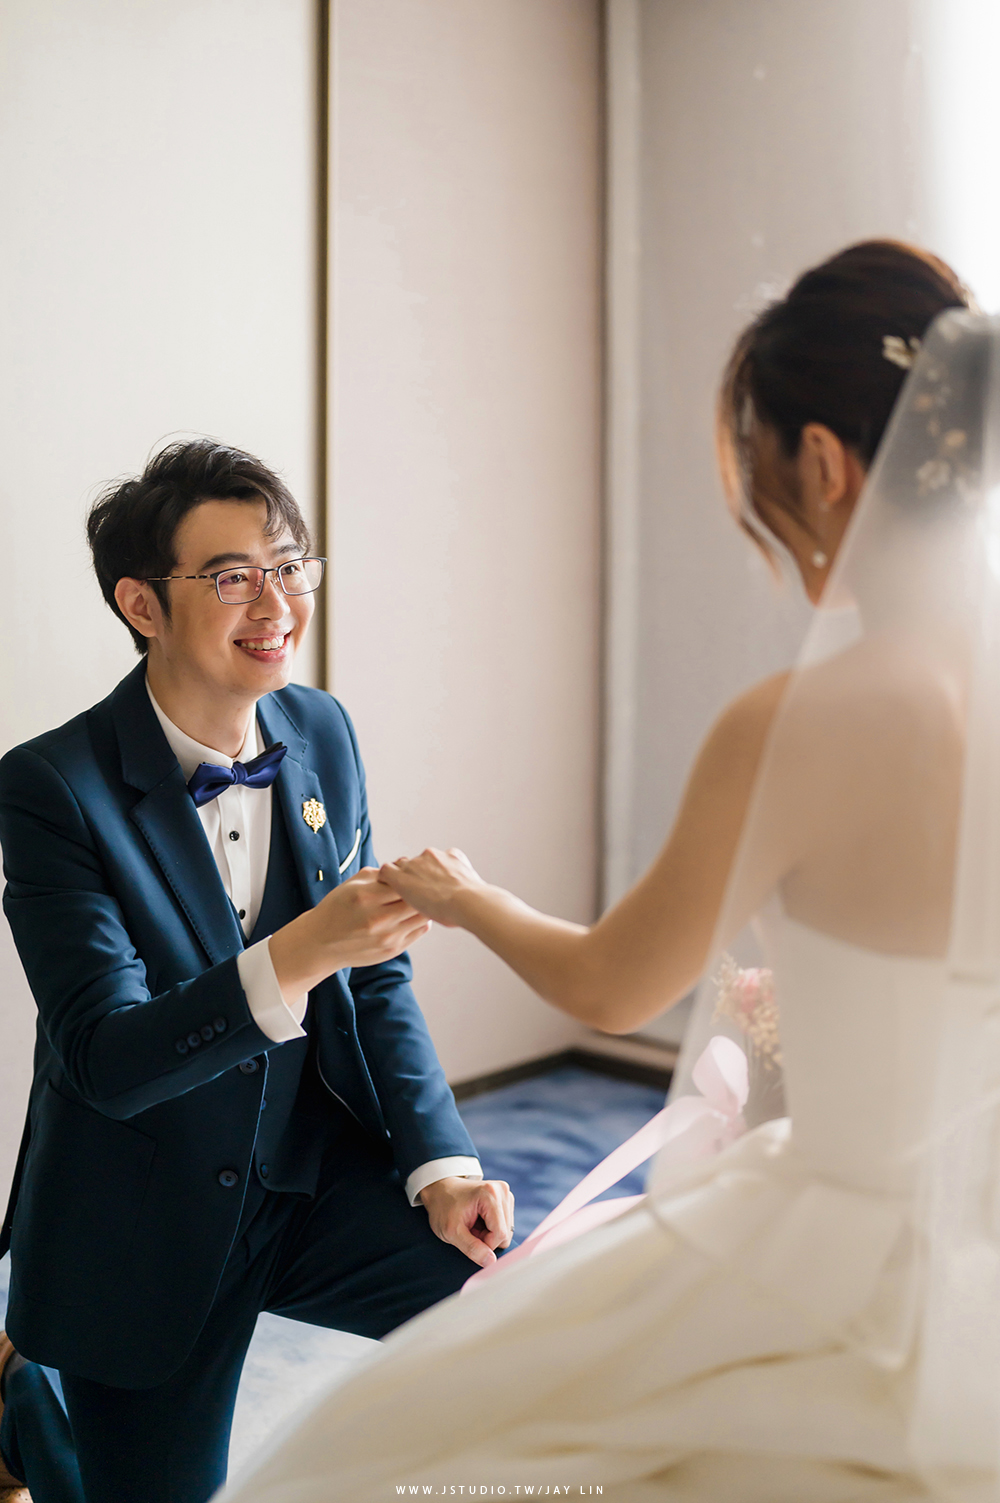 台北新板希爾頓酒店 希爾頓 台北婚攝 婚禮攝影 JSTUDIO_0048